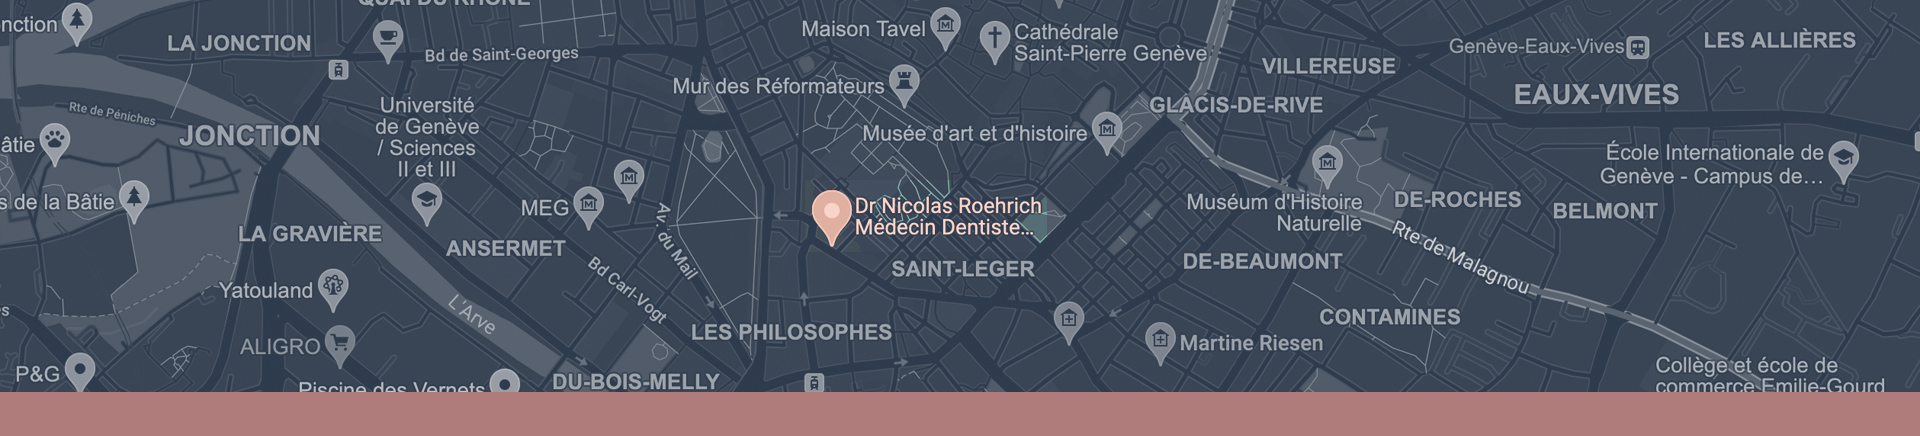 Localiser le cabinet du Dr Nicolas Roehrich et Dr Isabelle Cappuyns